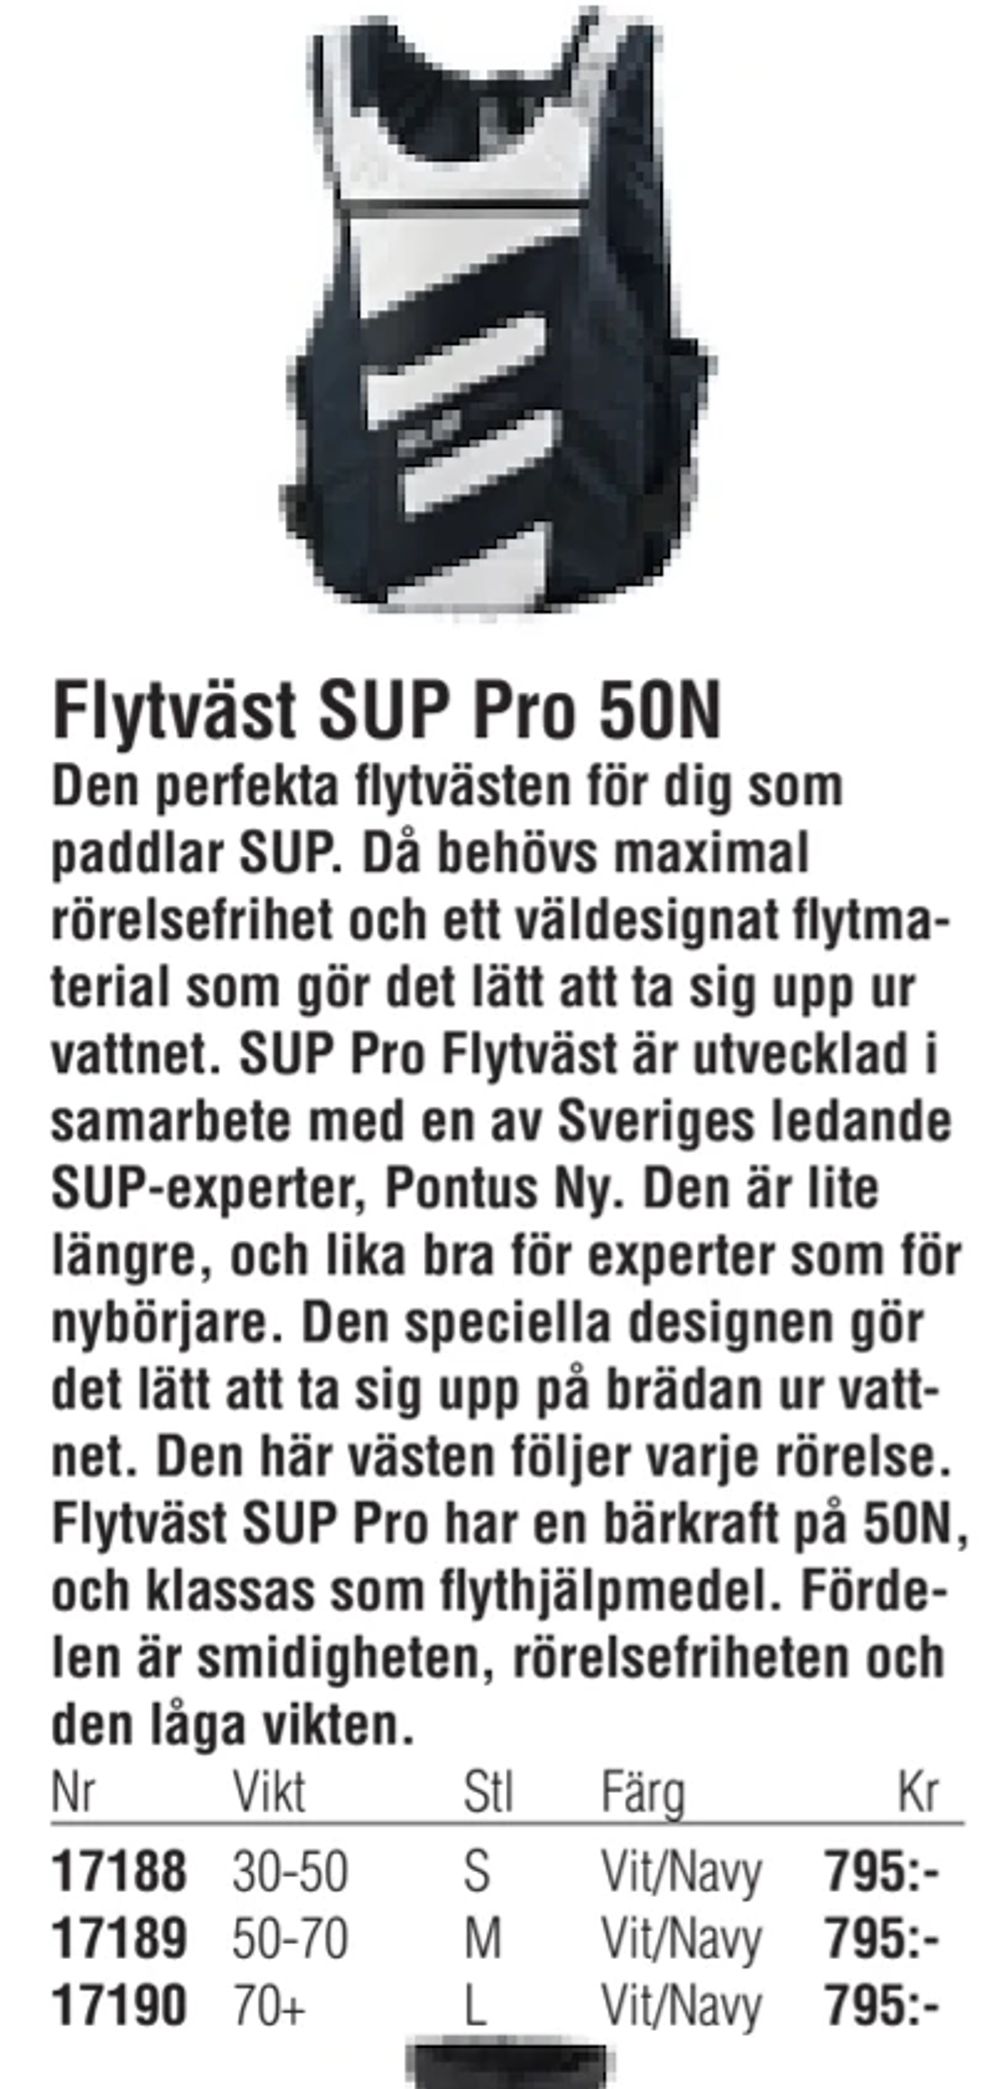 Erbjudanden på Flytväst SUP Pro 50N från Erlandsons Brygga för 795 kr